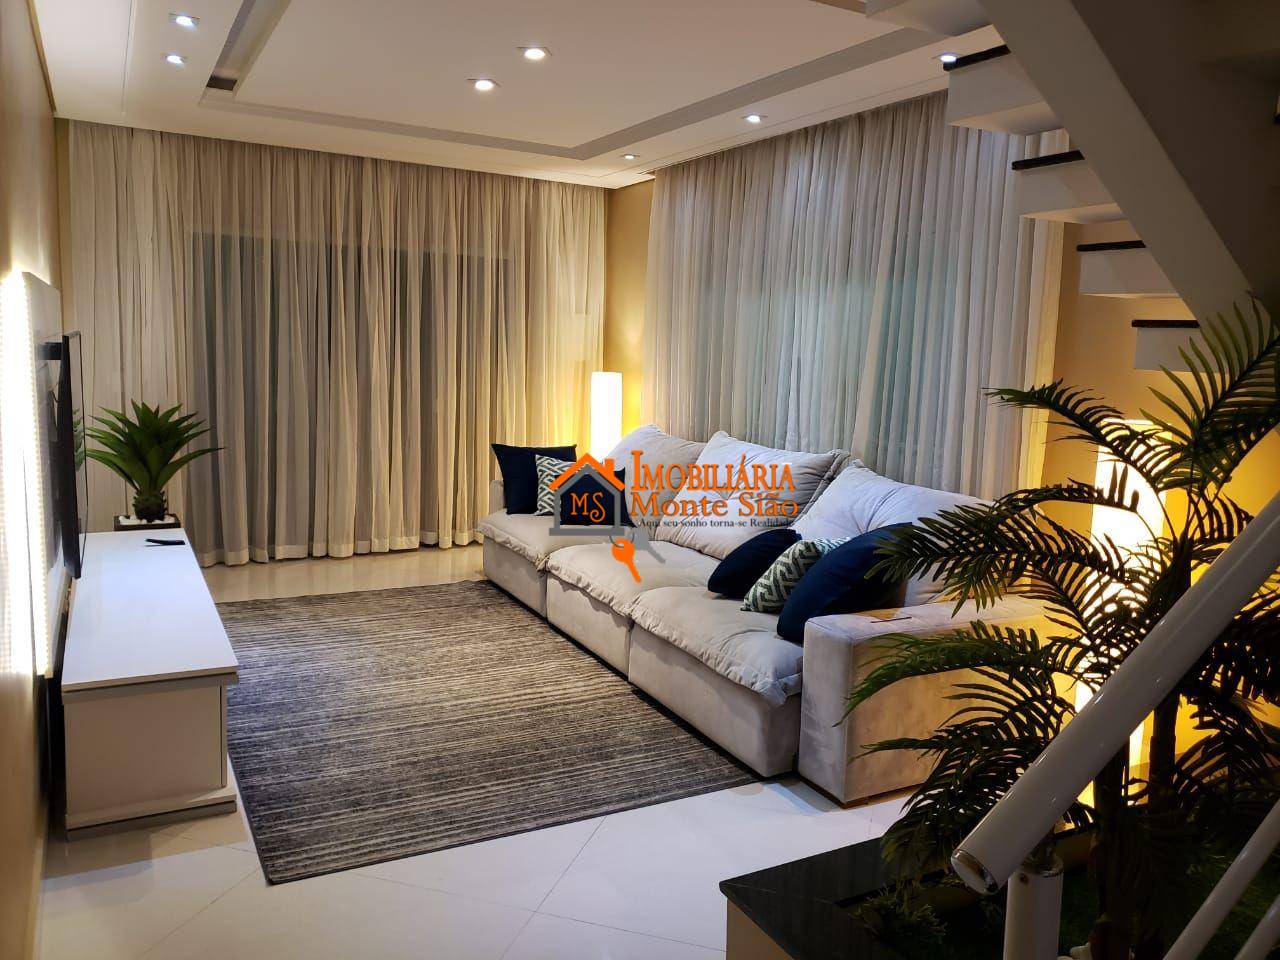 Sobrado com 3 dormitórios à venda, 125 m² por R$ 850.000,00 - Parque Continental I - Guarulhos/SP